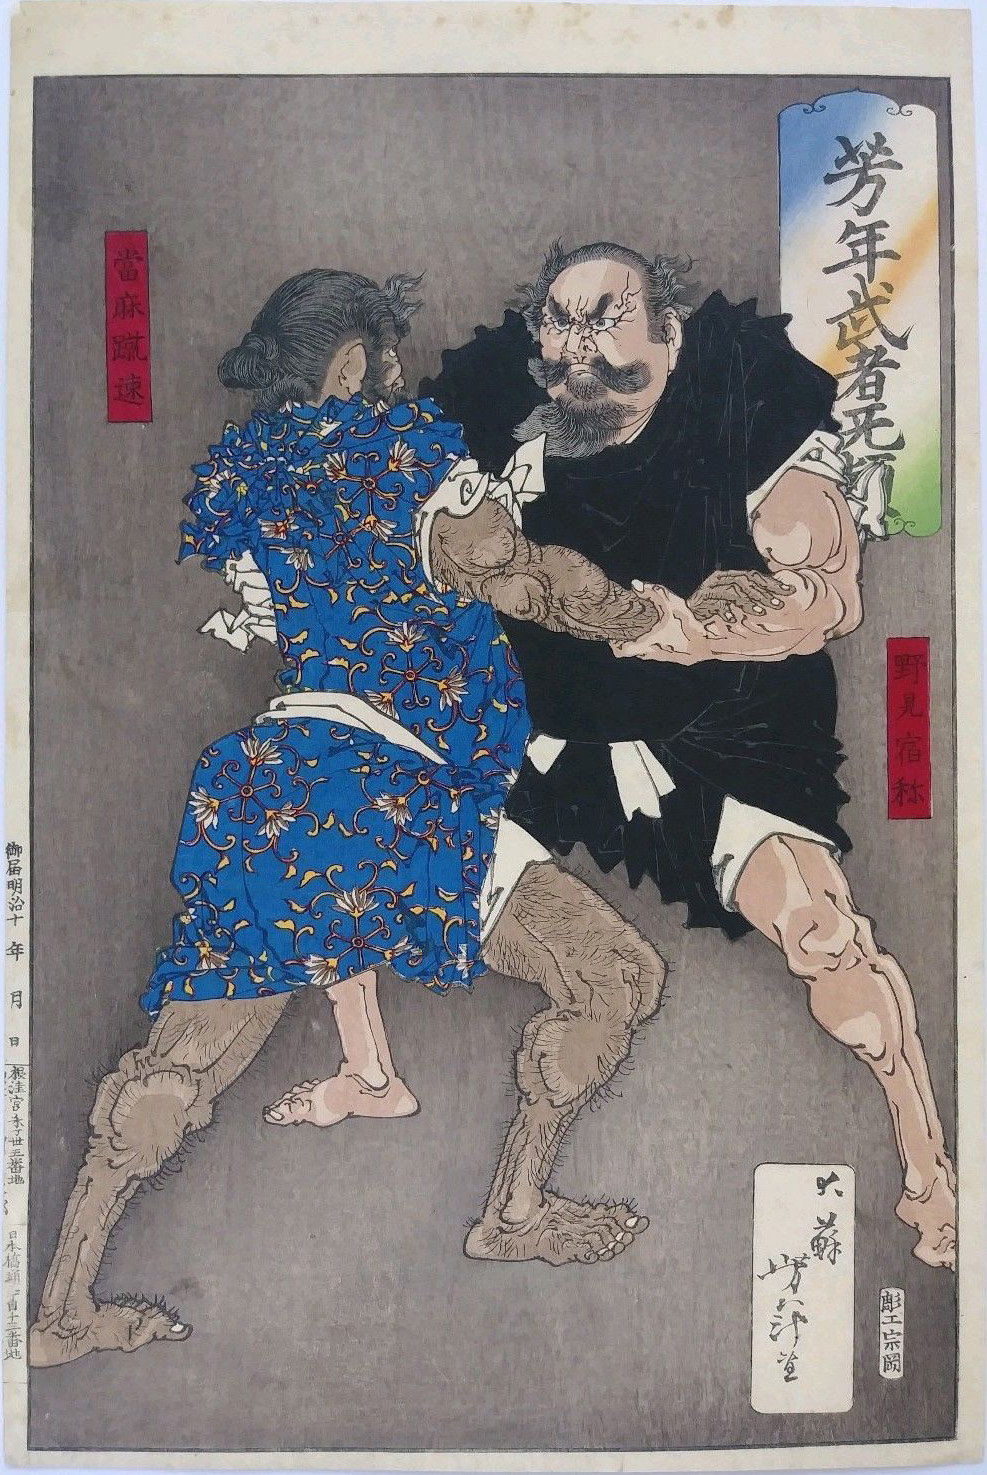 Nomi no Sukune Wrestling by Tsukioka Yoshitoshi